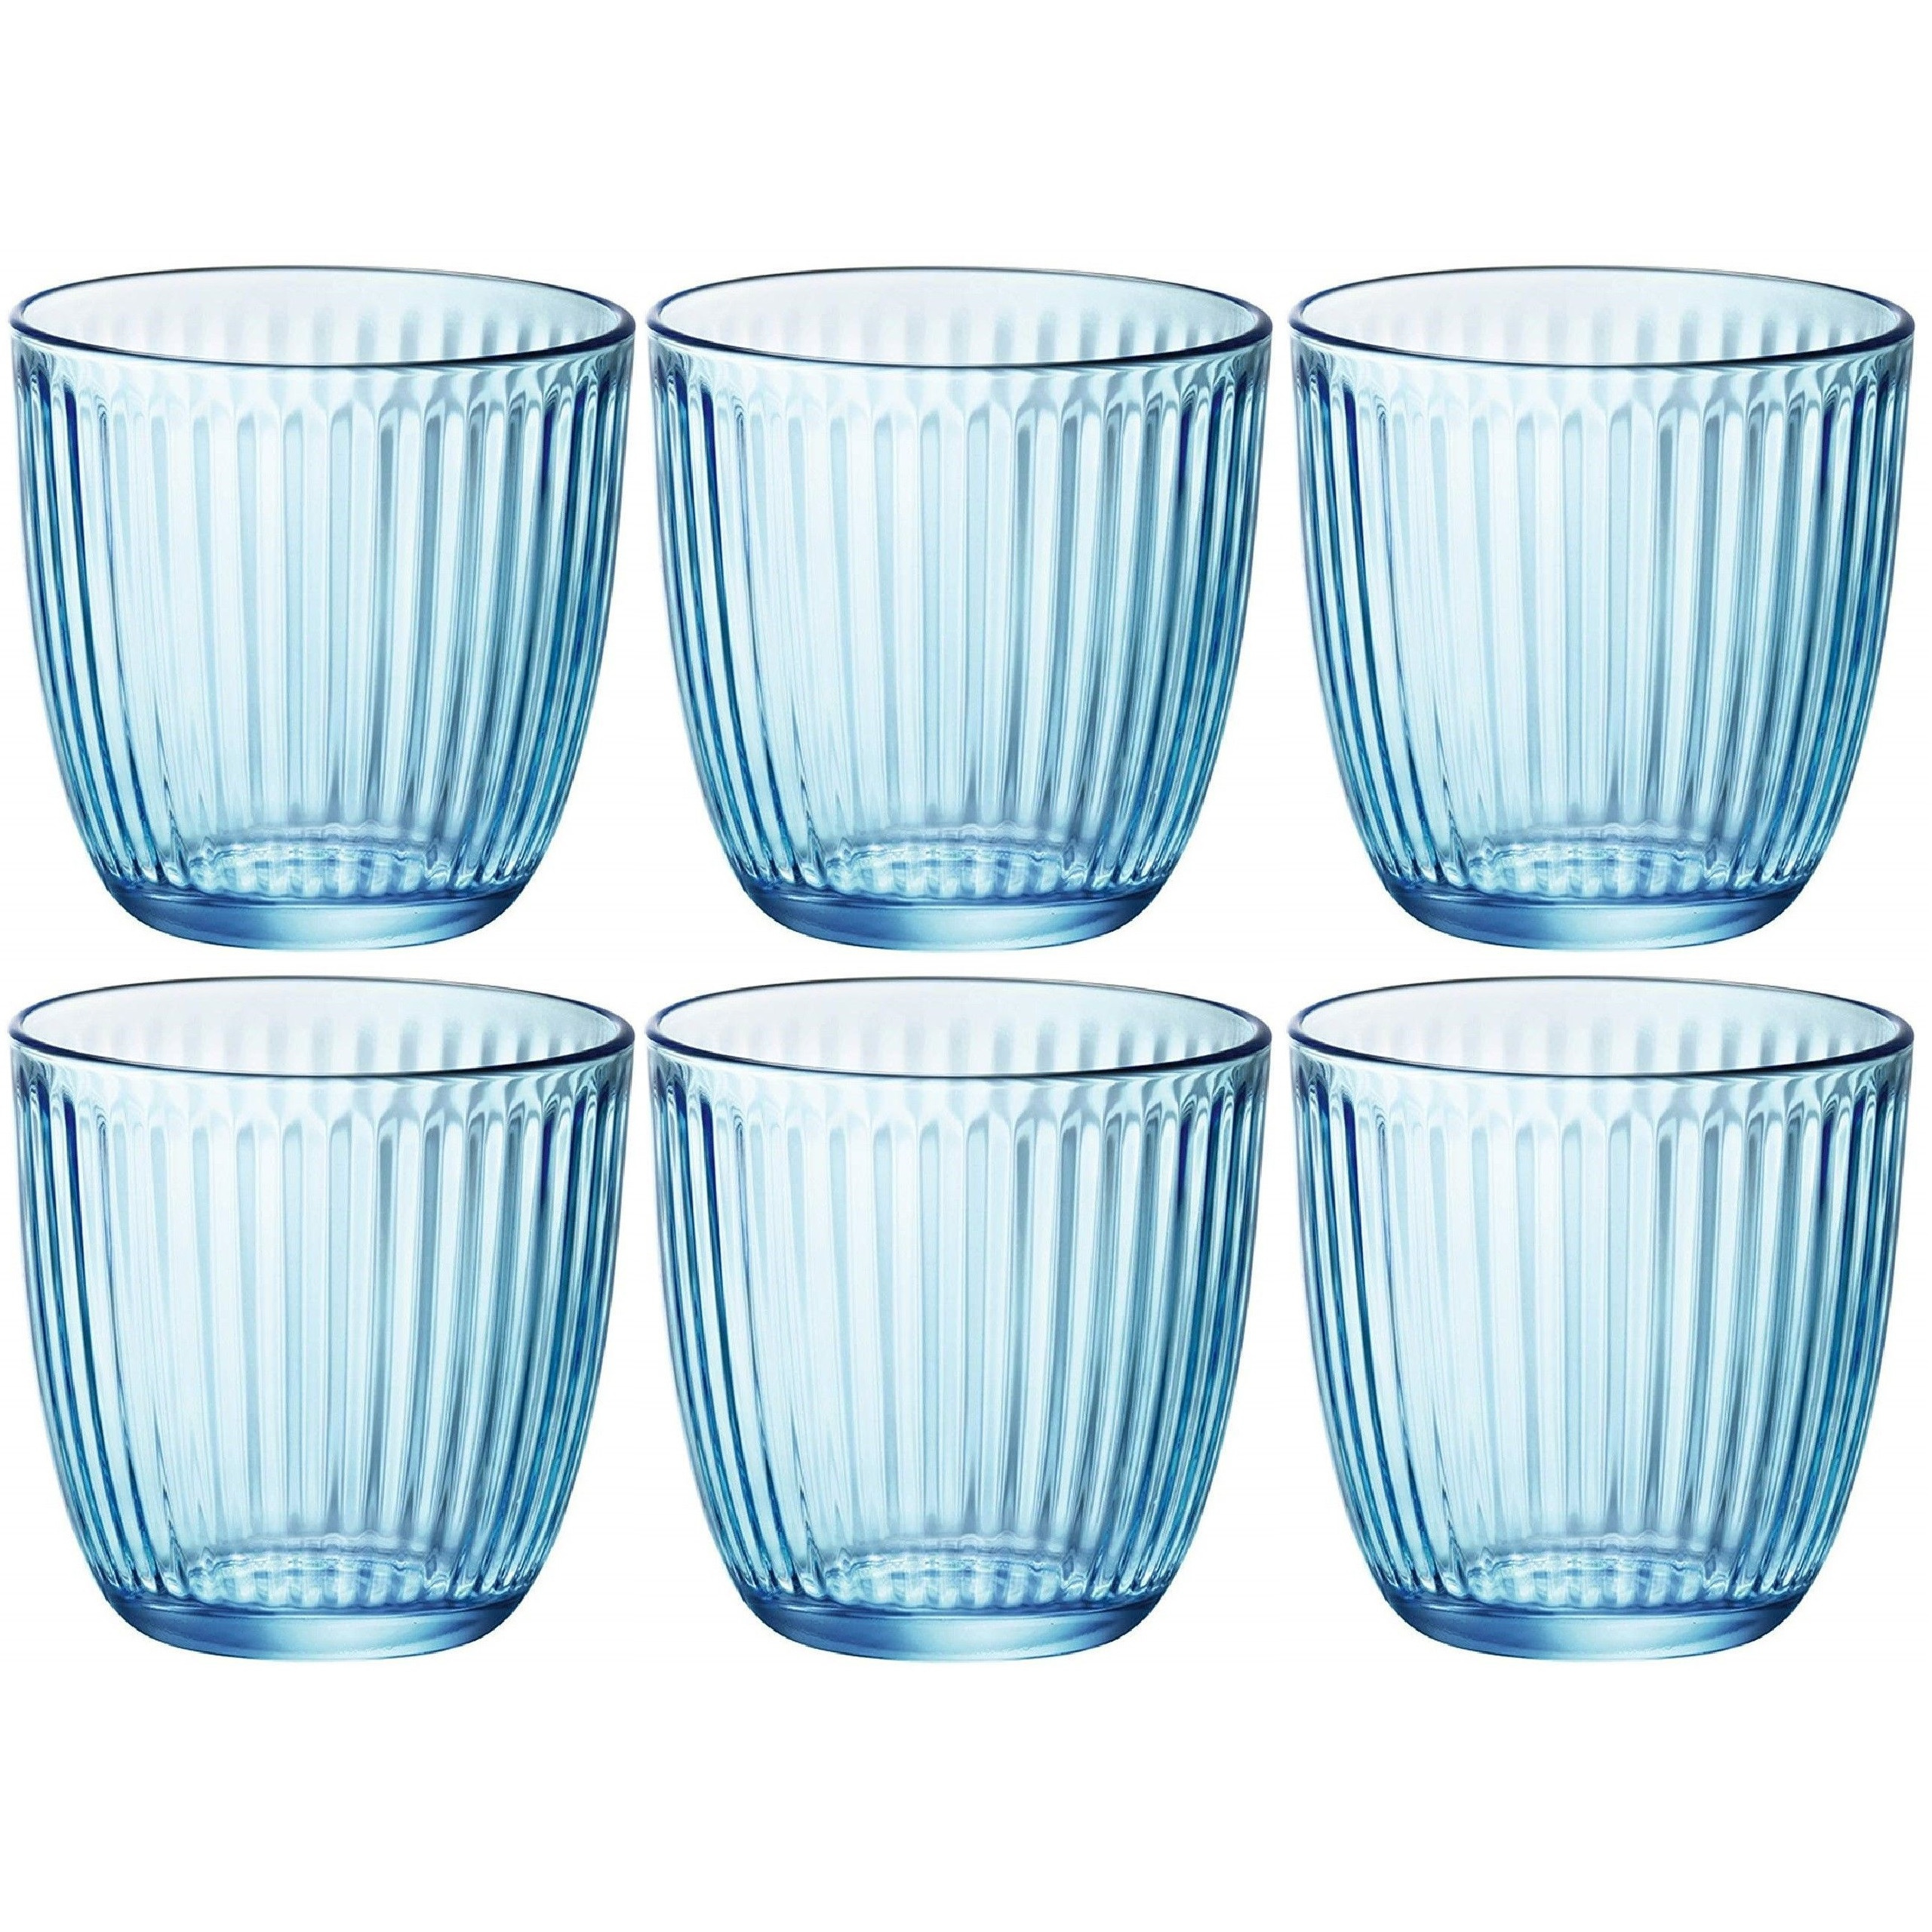 Waterglazen-drinkglazen 6x blauw tumbler glas 290 ml